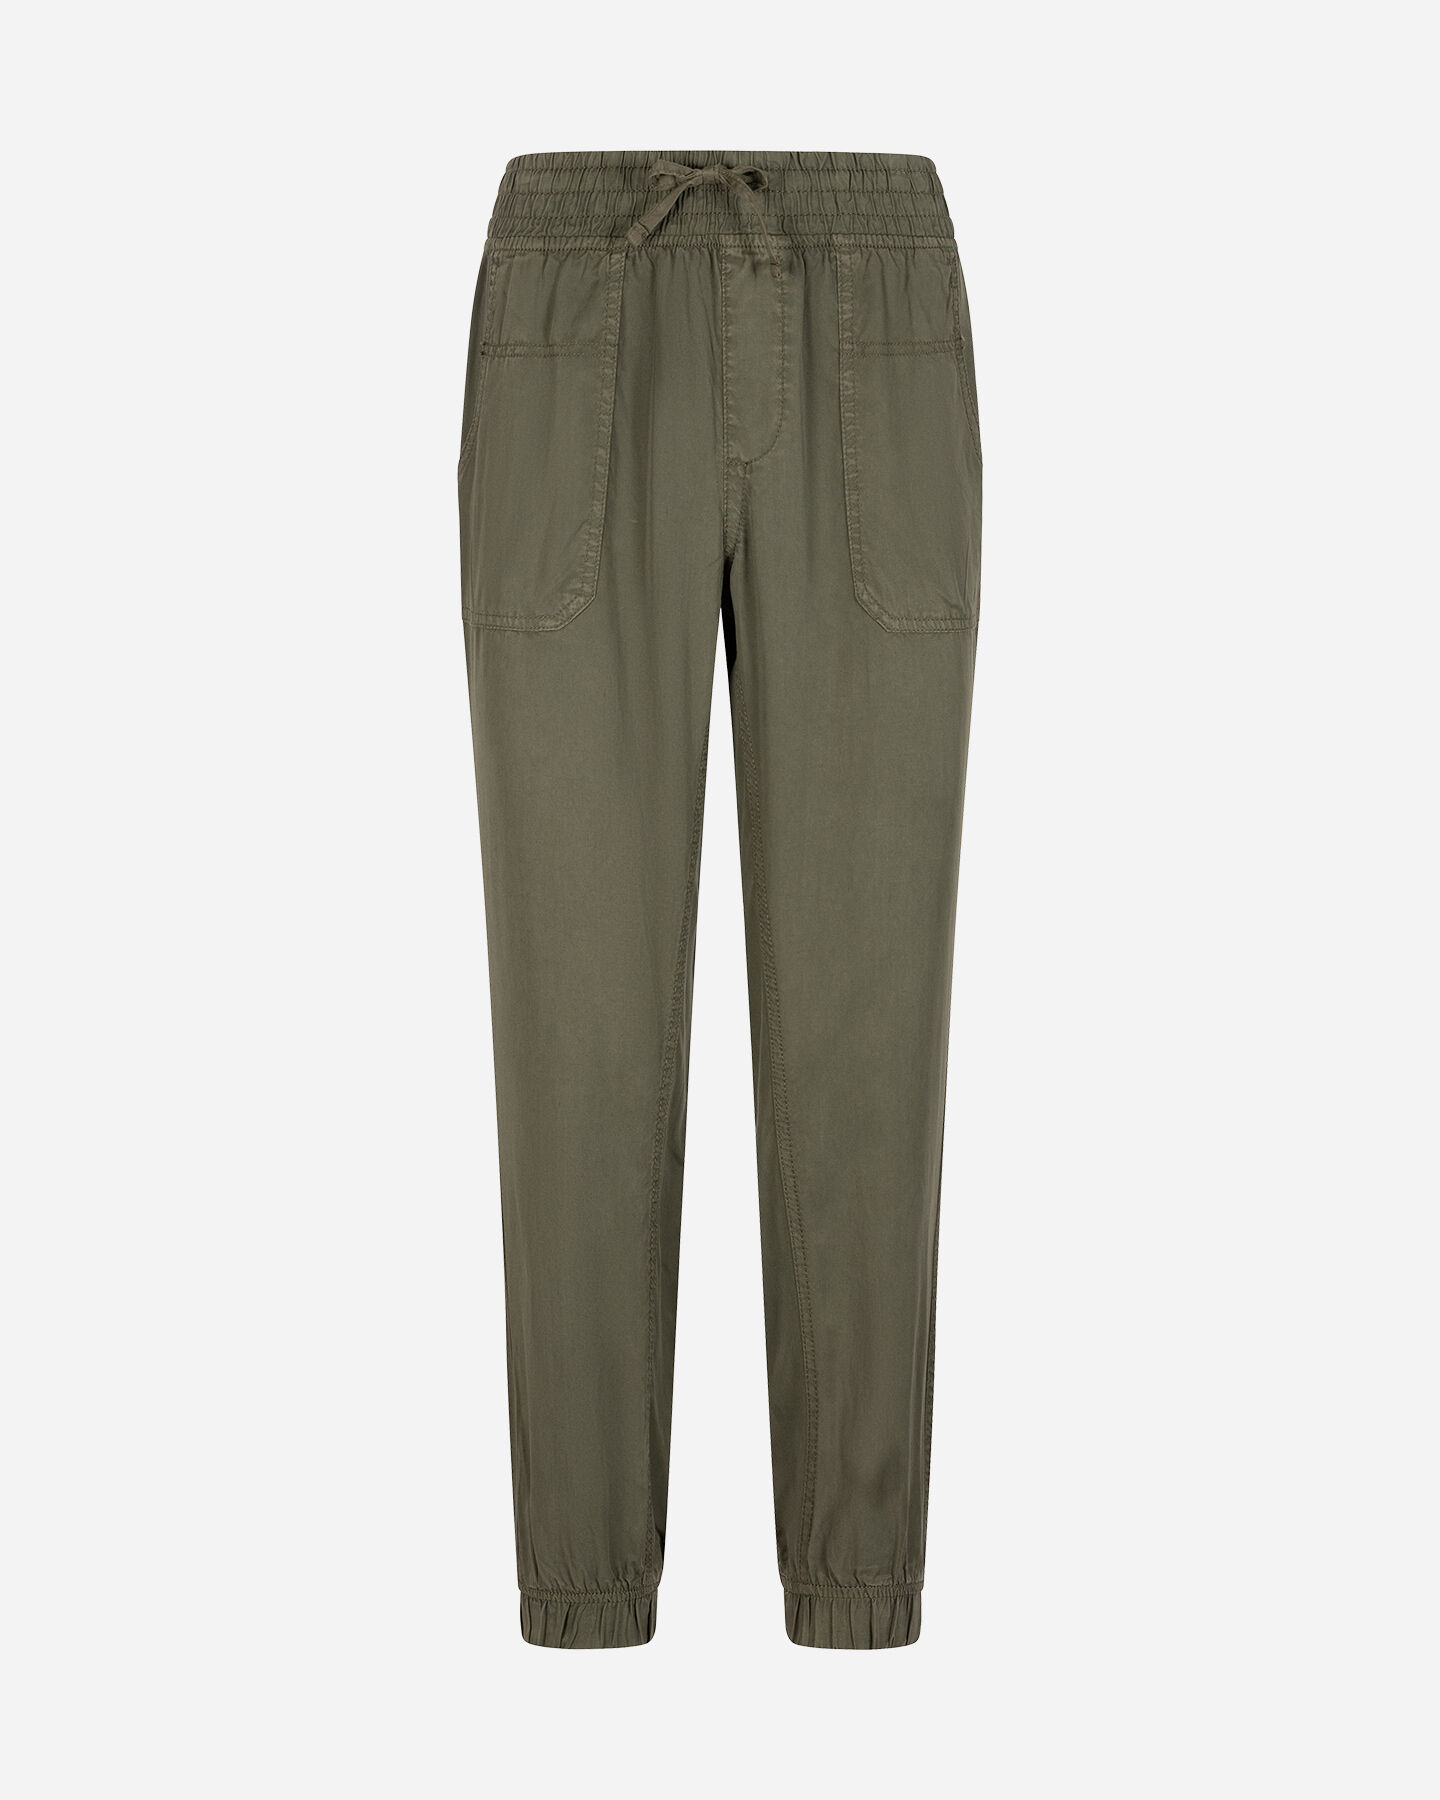  Pantalone MISTRAL ESSENTIAL W S4130009|784|XS scatto 0